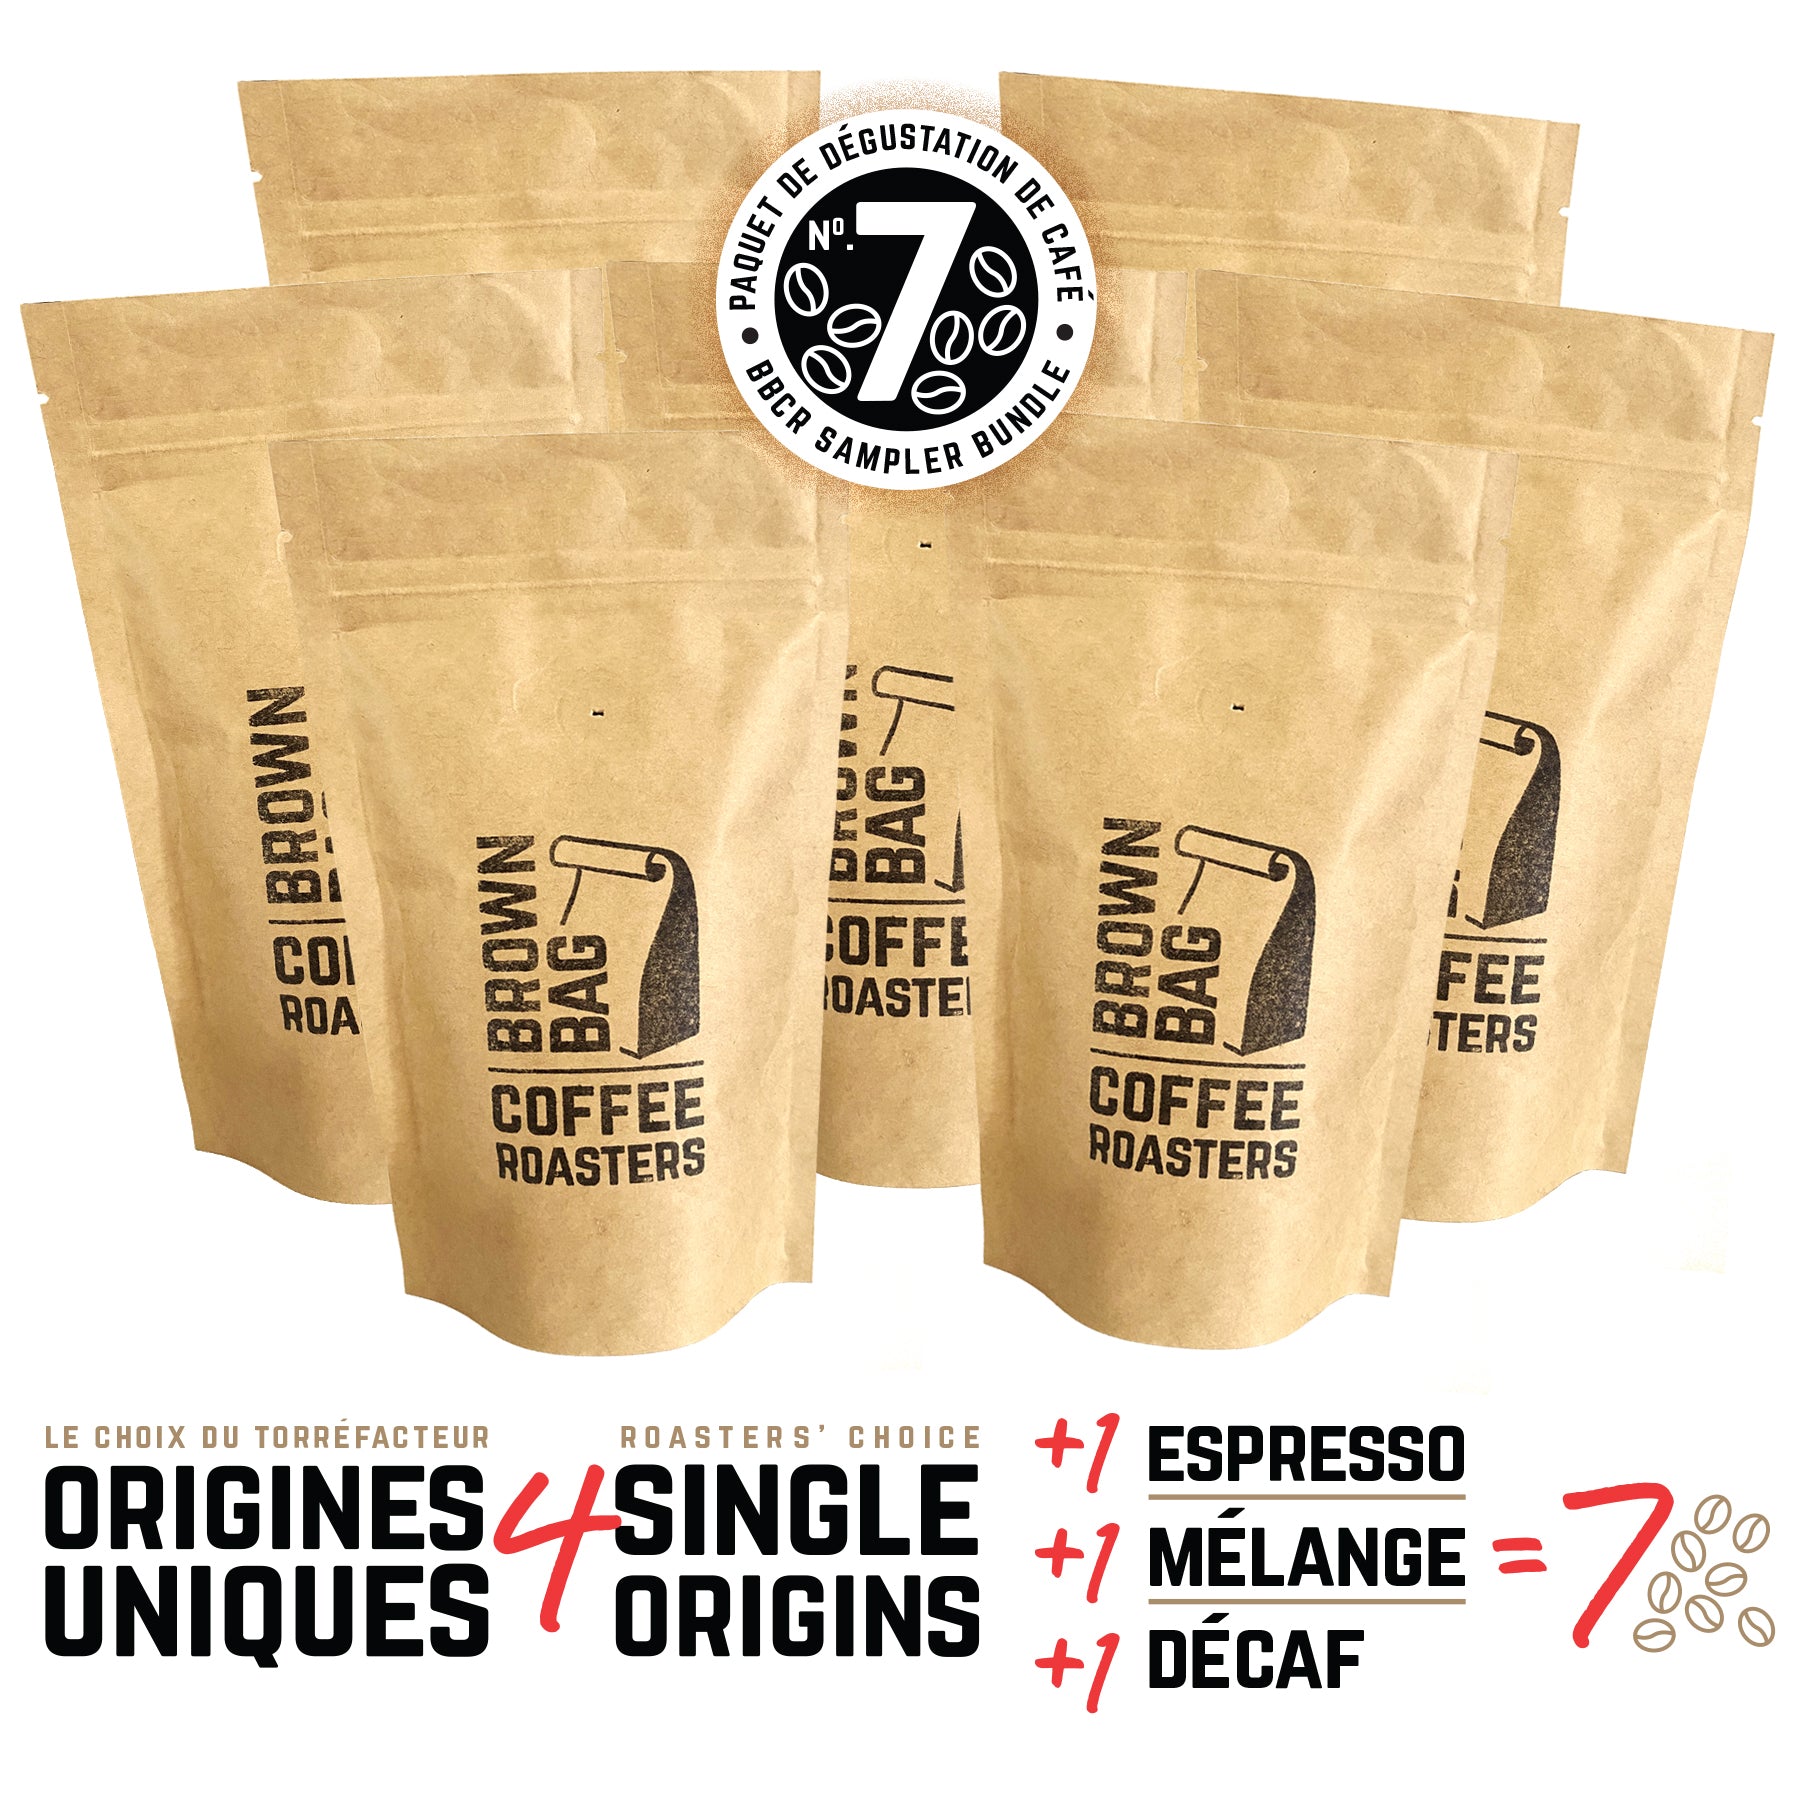 No.7 BBCR sampler bundle | Le no.7 paquet de dégustation de café